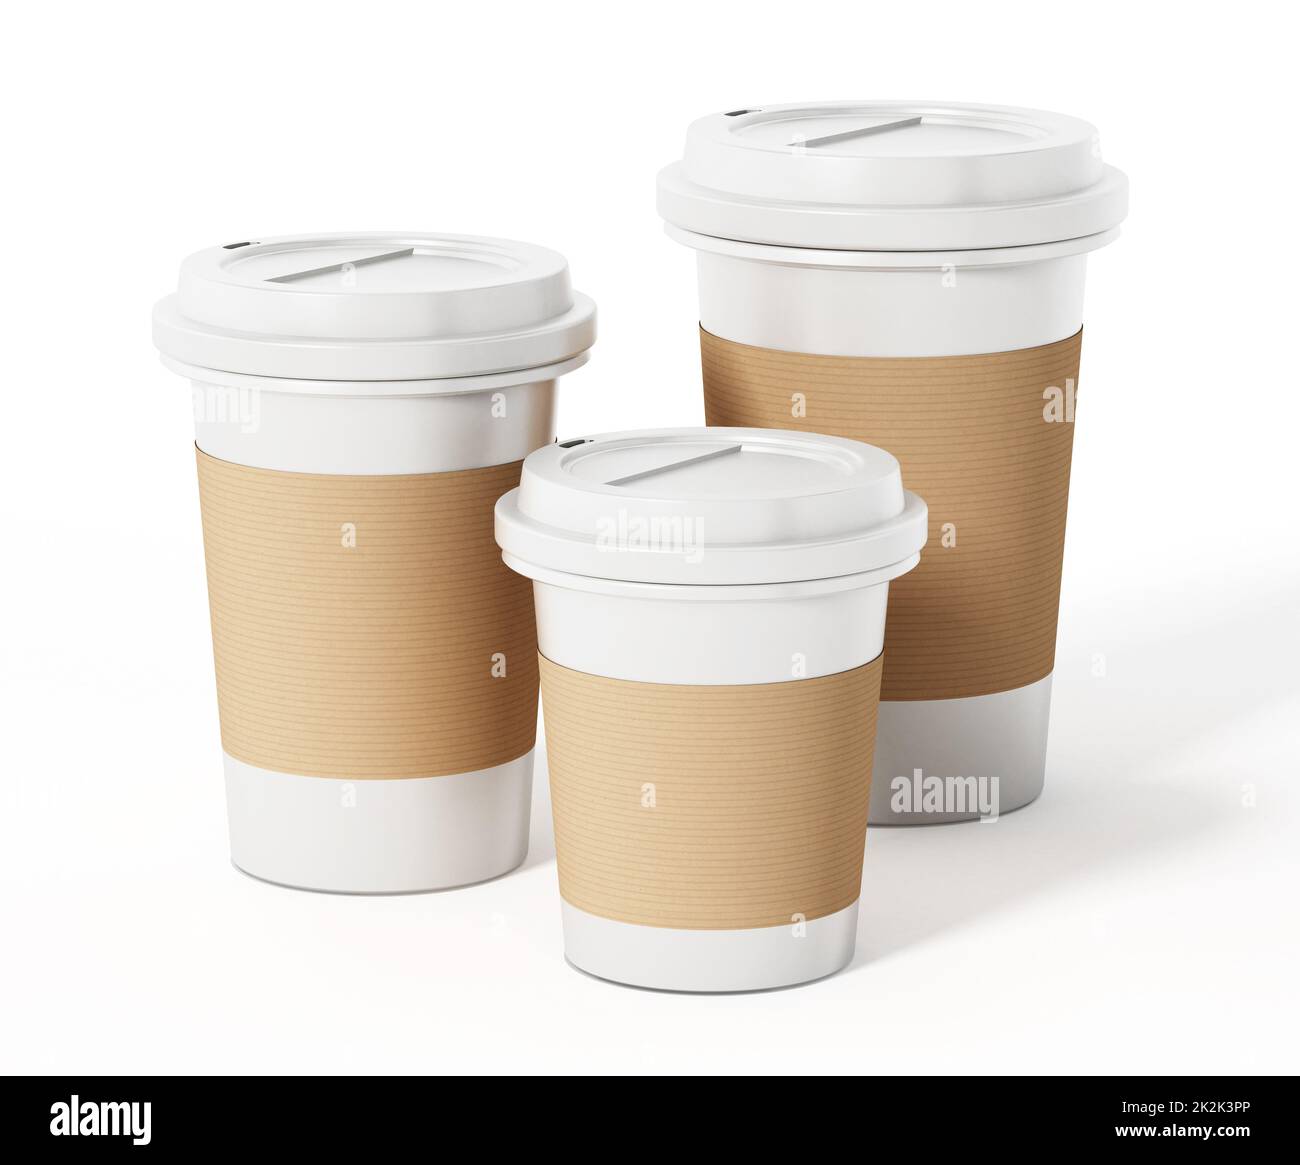 Tazze di caffè di varie dimensioni isolate su sfondo bianco. Illustrazione 3D Foto Stock